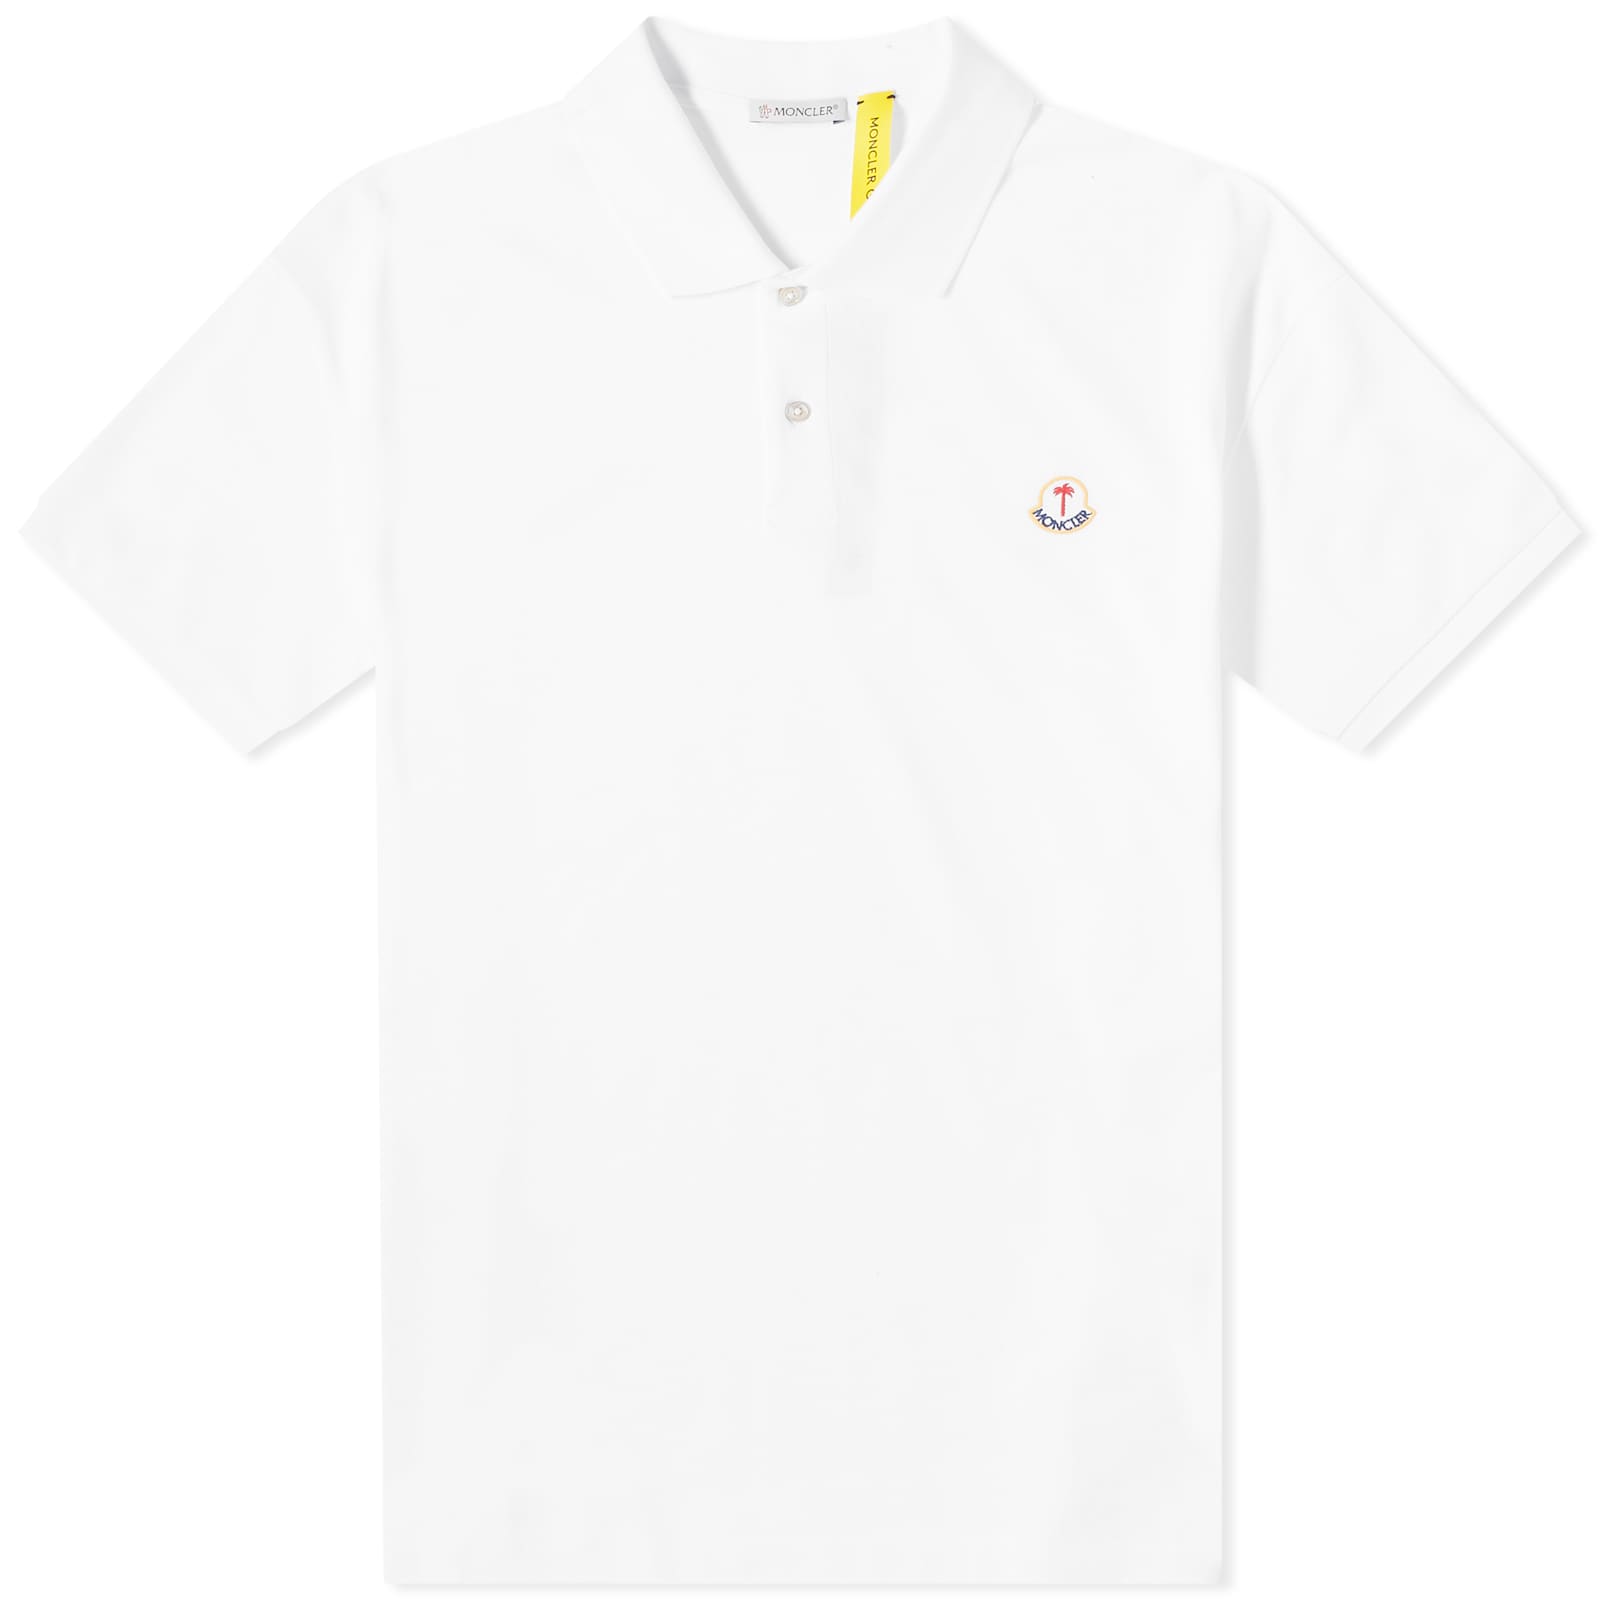 Поло Moncler Genius X Palm Angels Short Sleeve, белый рубашка поло с логотипом moncler x palm angels moncler genius темно синий